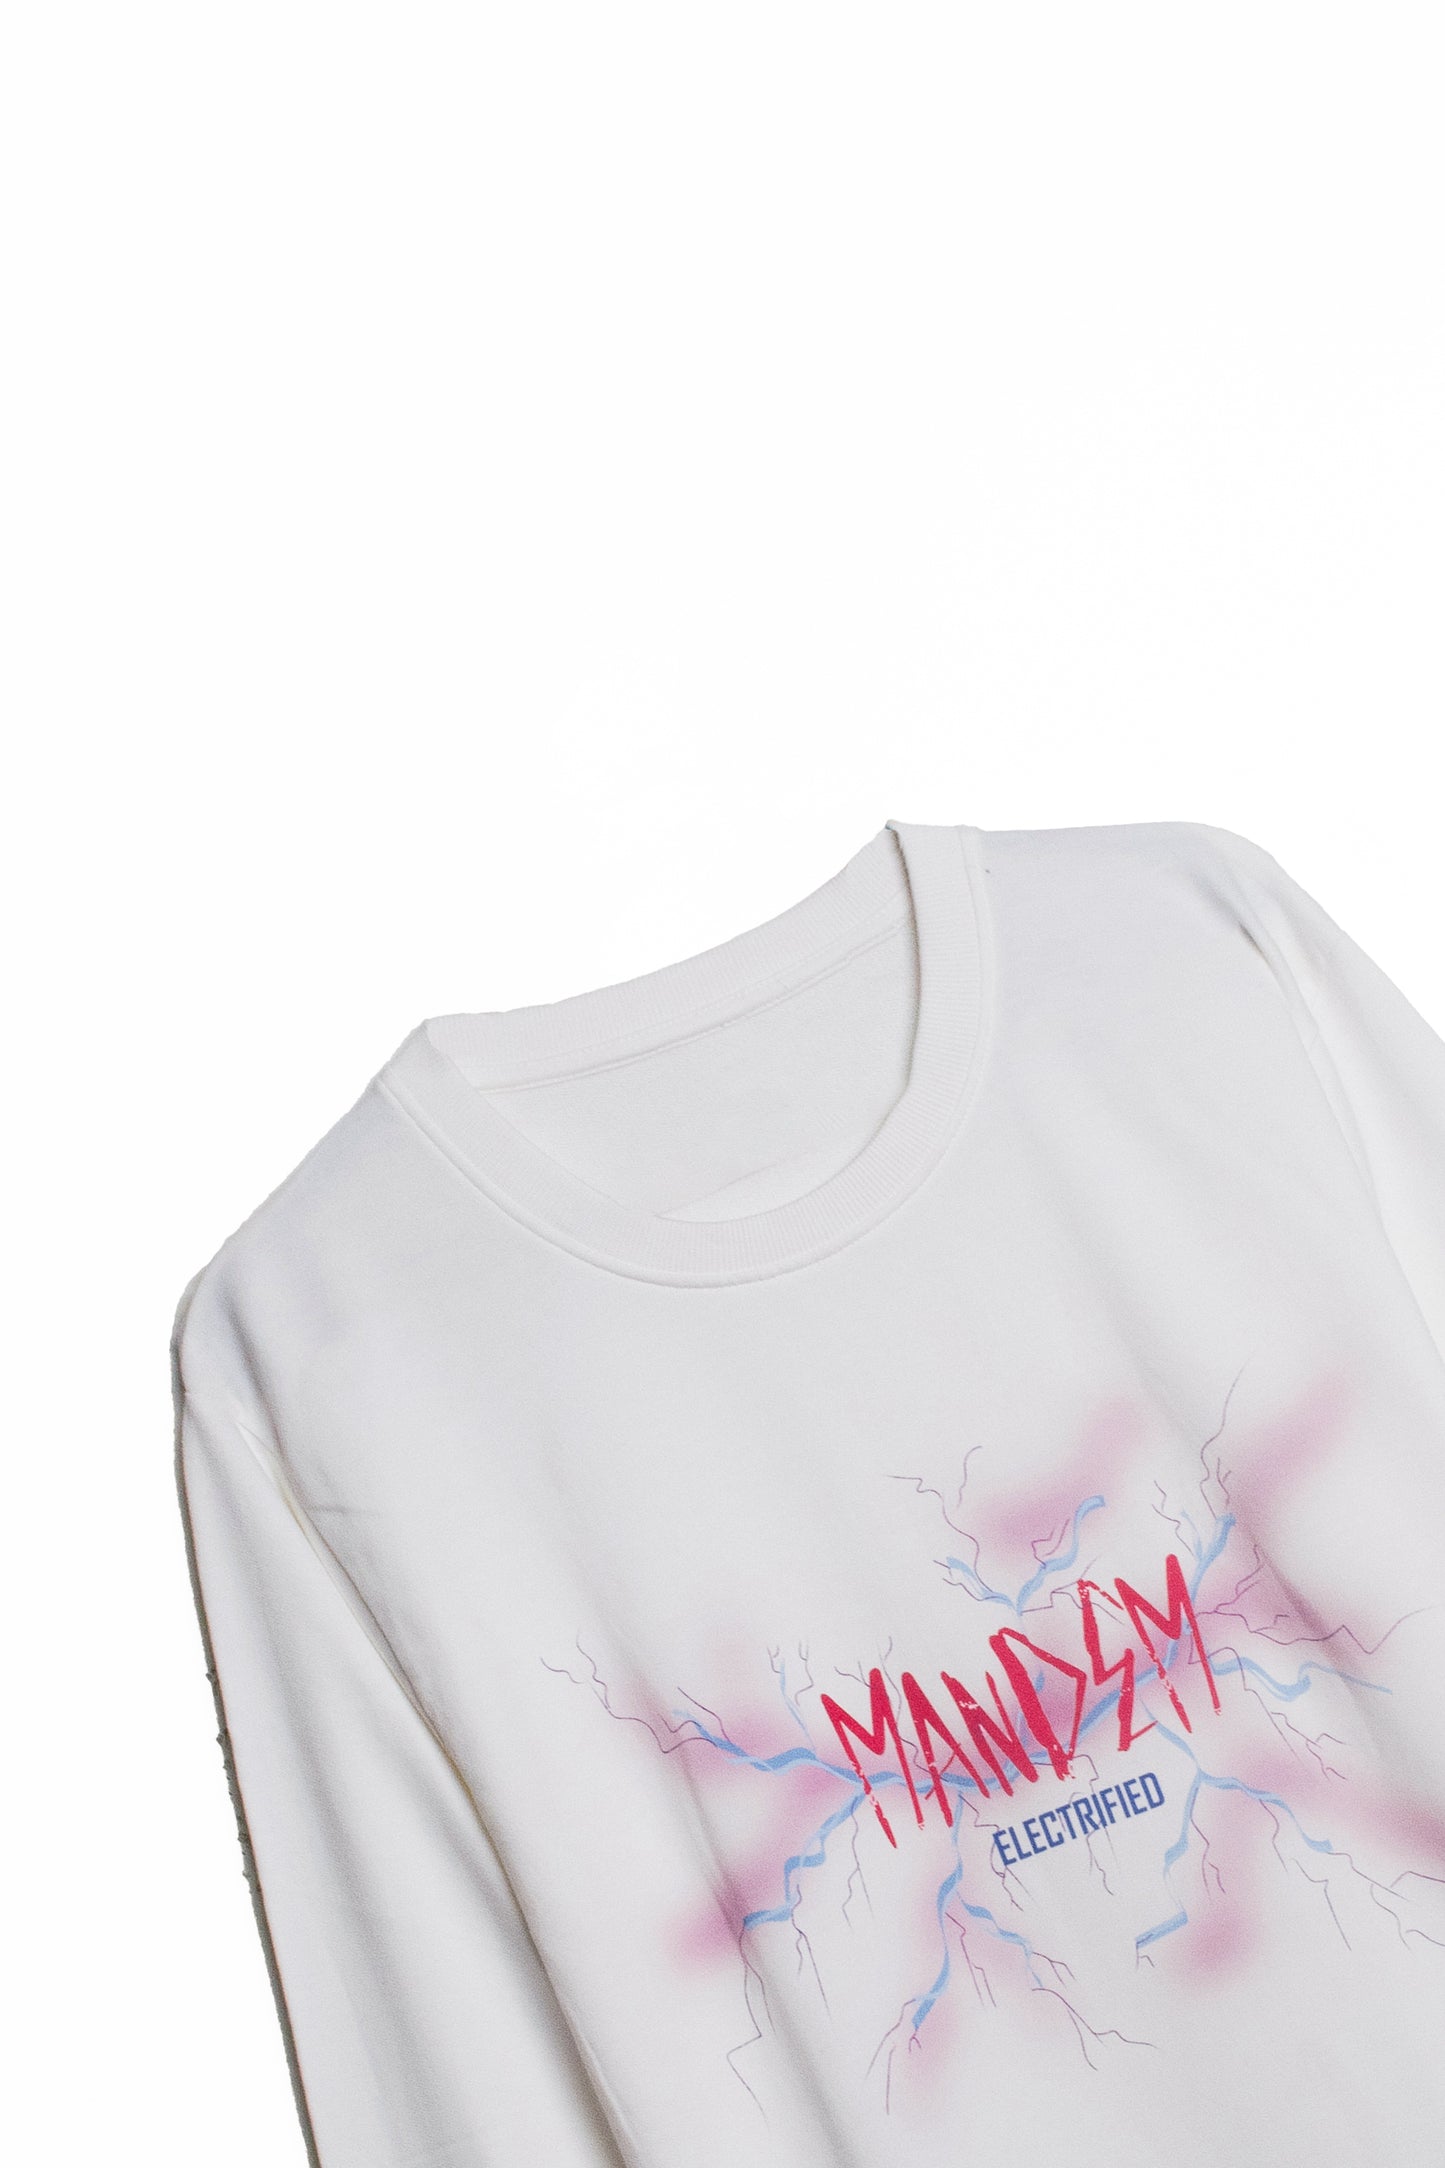 MANDEM ELECTRIFIED WHITE Sweatshirt (UNISEX)